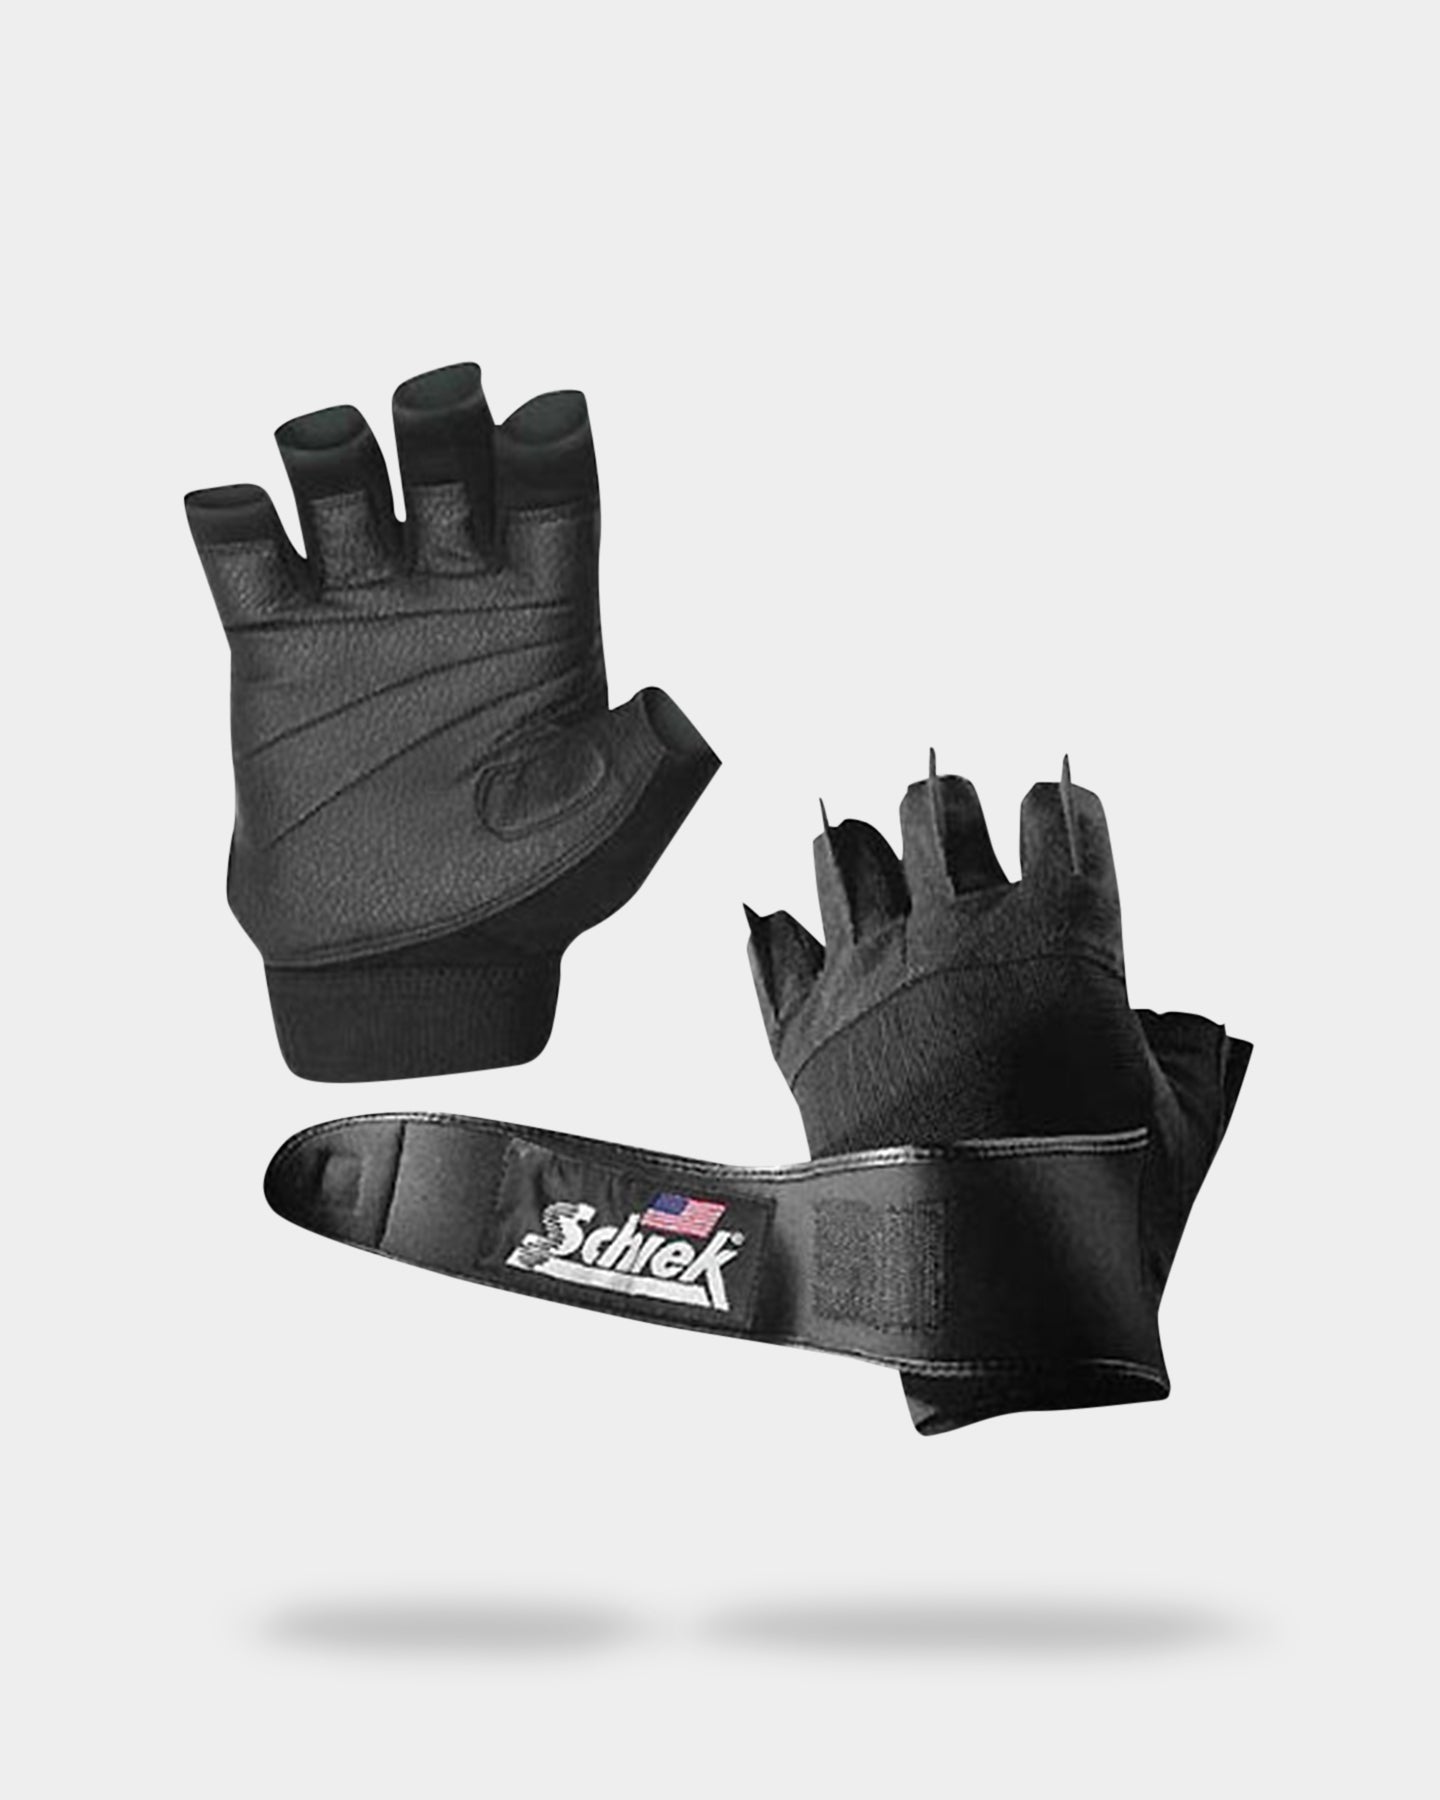 Image of Schiek Model 540 Lifting Gloves